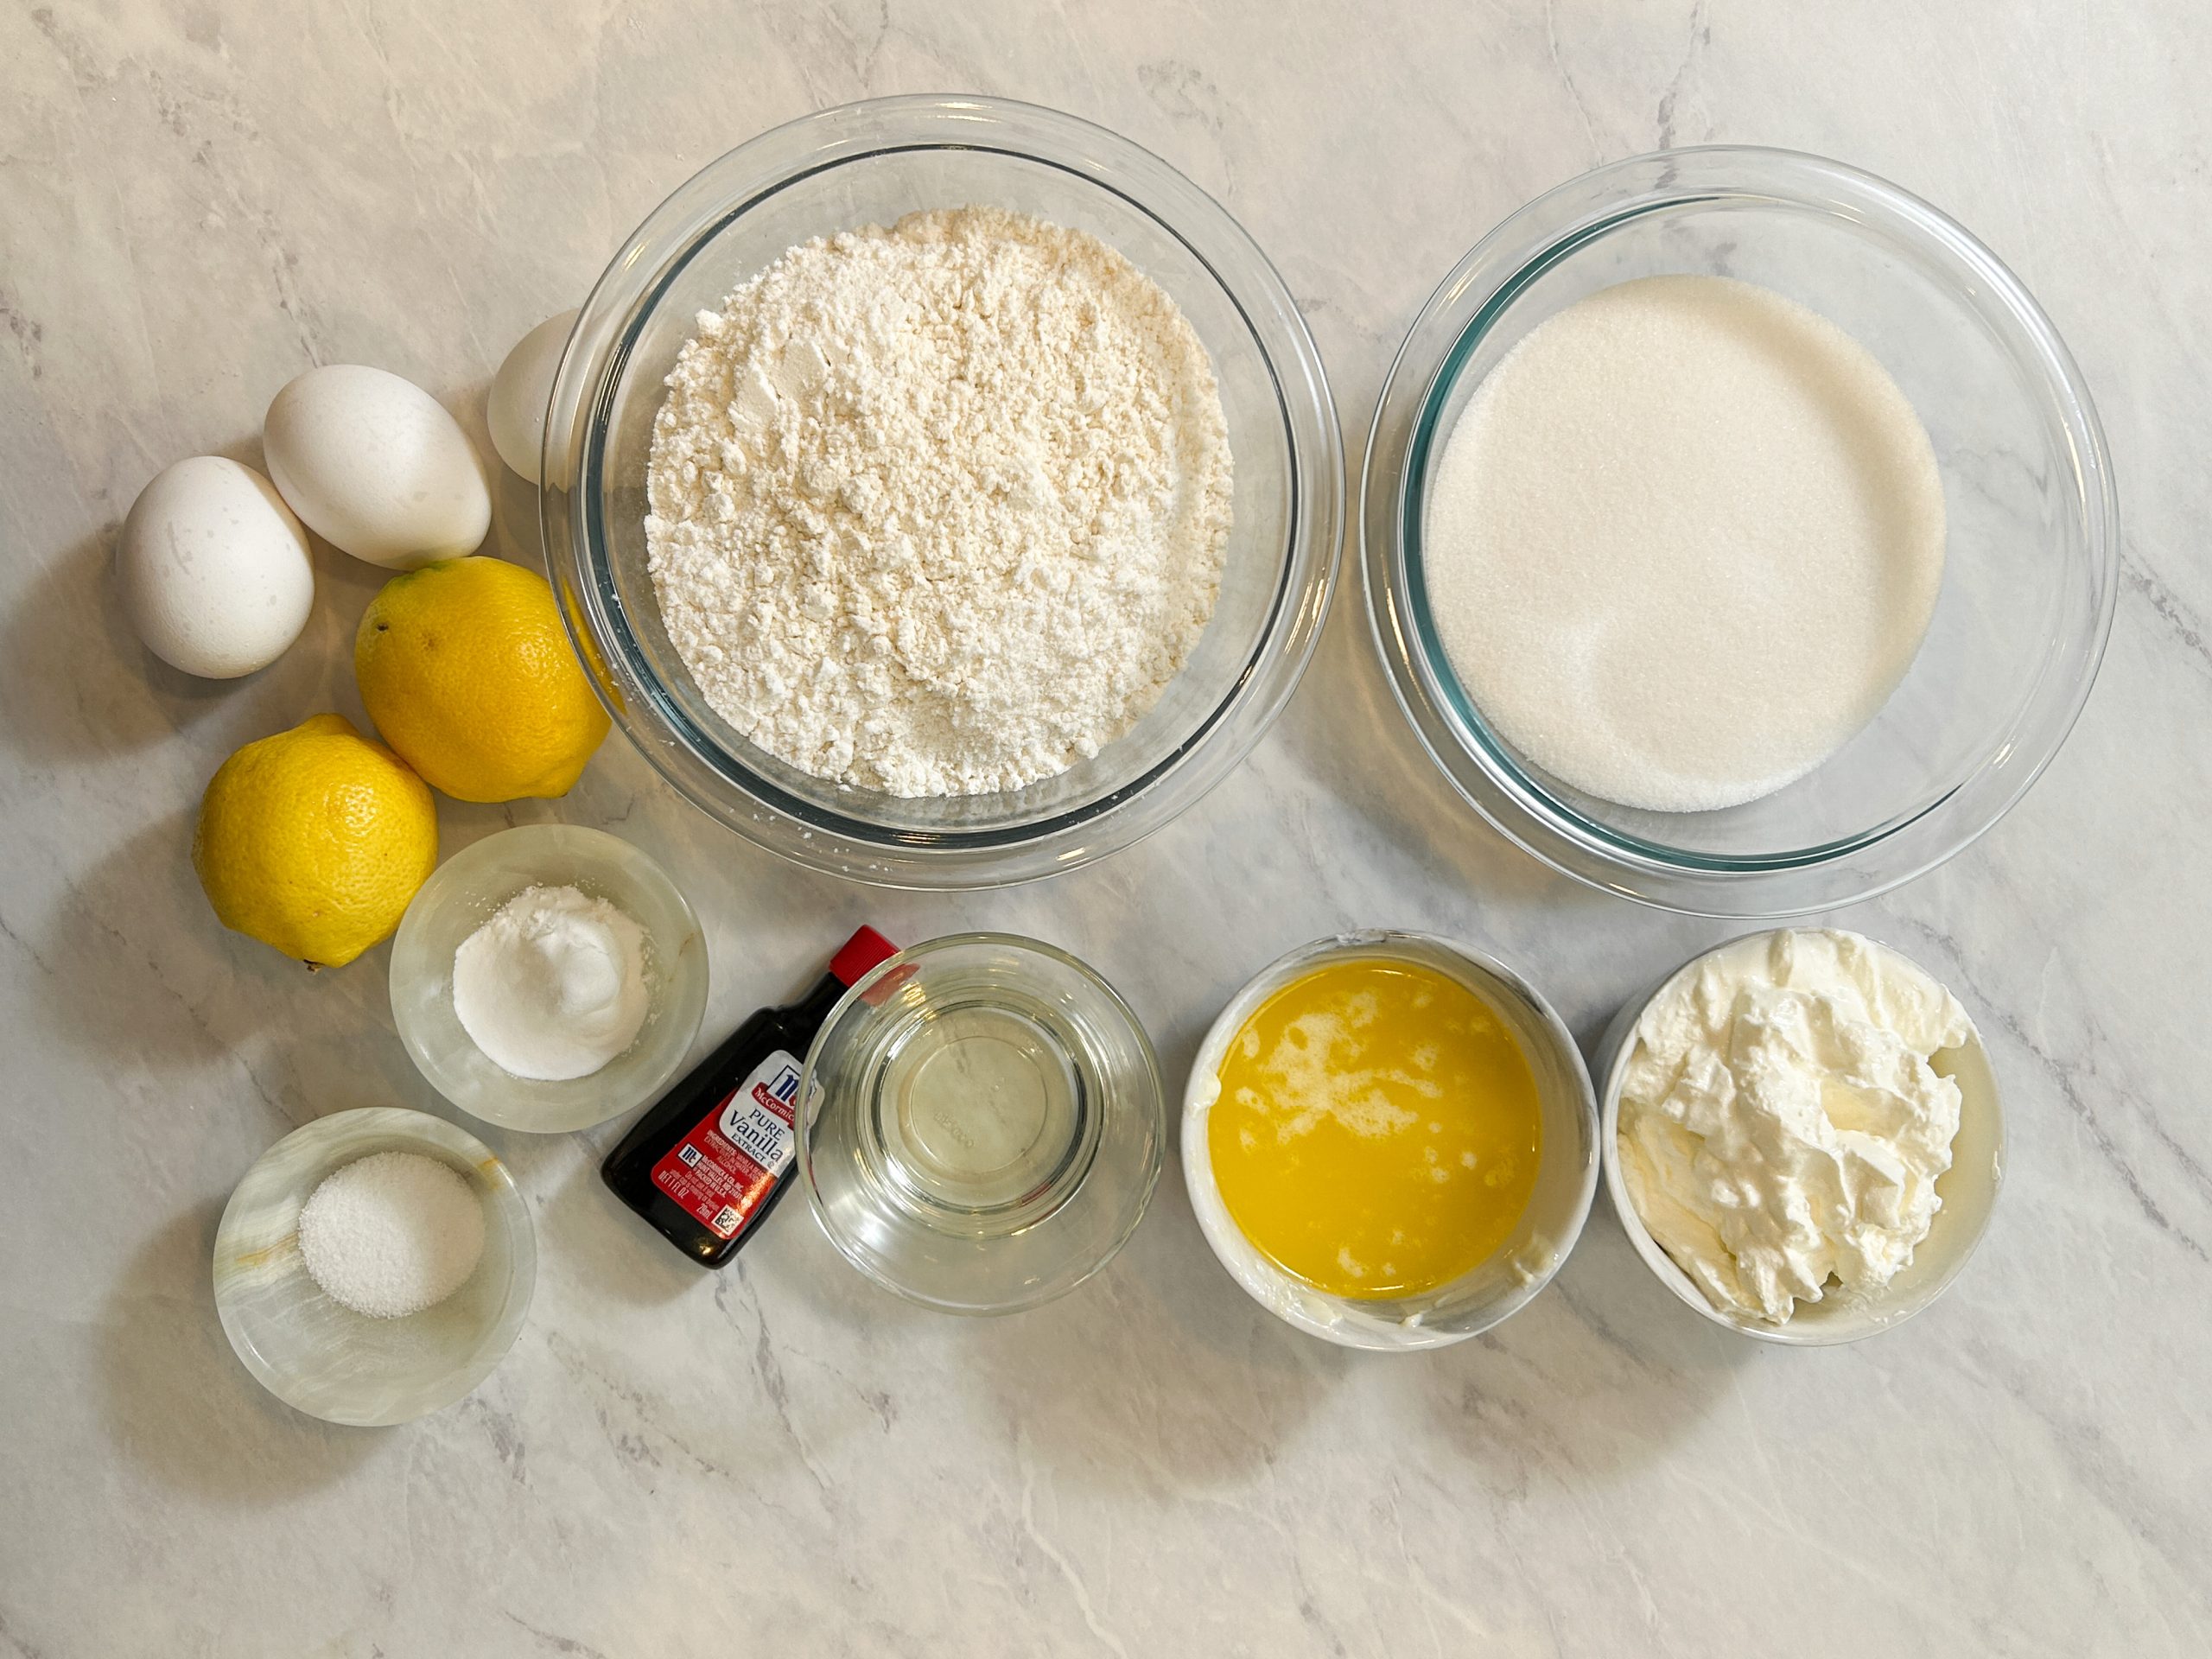 lemon cake ingredients: lemons, eggs, flour, sugar, oil, butter, salt, baking powder, soda and vanilla